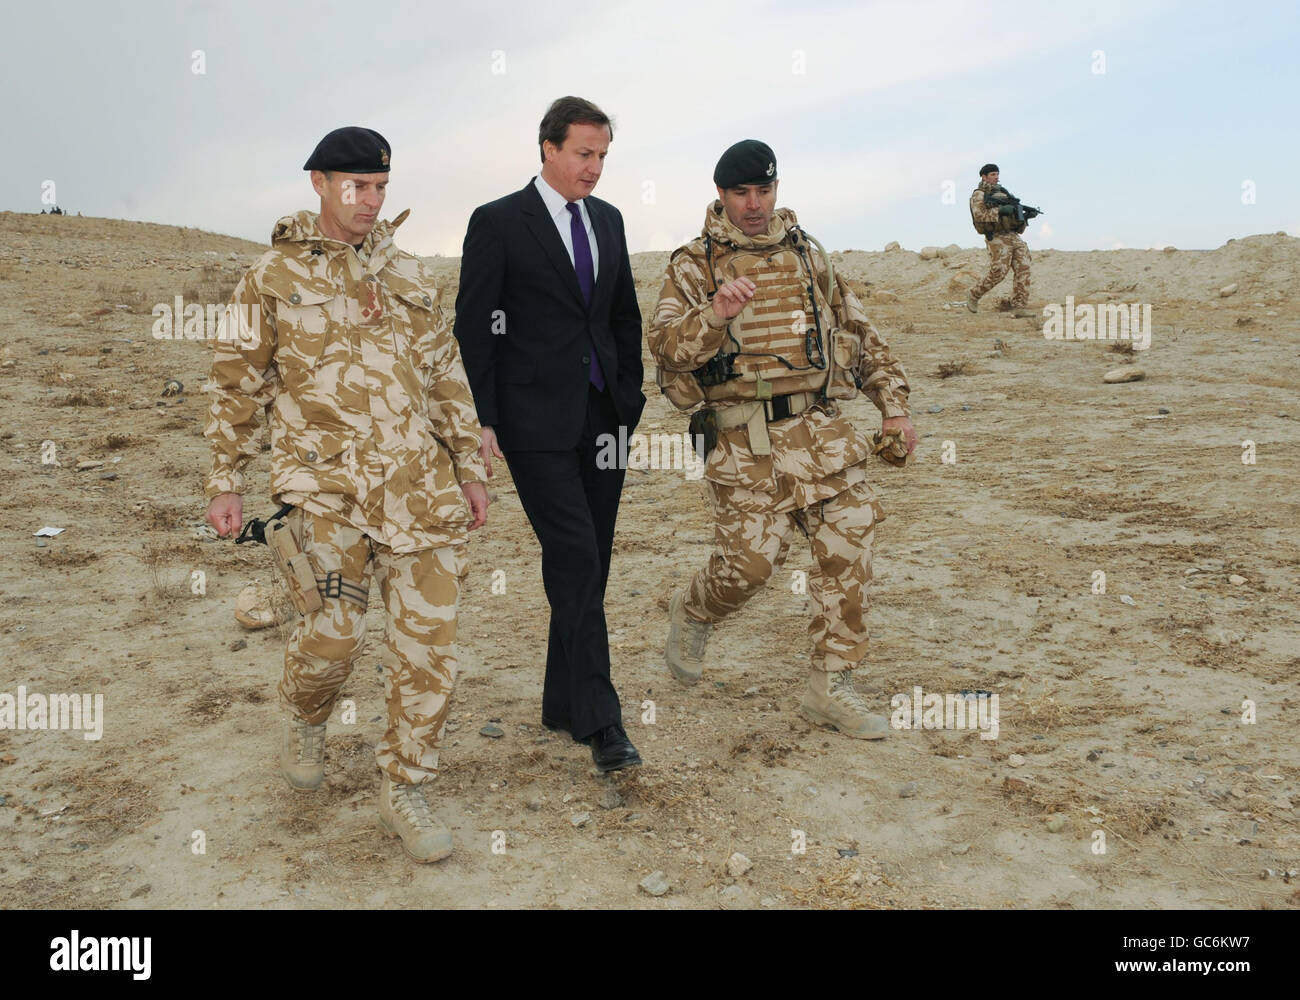 Der konservative Parteichef David Cameron durchstreift heute das Kabul Military Training Center in Afghanistan, wo er britische Soldaten sah, die neue Rekruten der afghanischen Nationalarmee ausbilden. Das Lager, etwas außerhalb von Kabul, war früher eine russische Armeebasis und ist jetzt mit rostenden sowjetischen Panzern übersät. Herr Cameron ist auf einem dreitägigen Besuch in Afghanistan, wo er Kandahar, Laskar Gah und Kabul besucht hat. Stockfoto